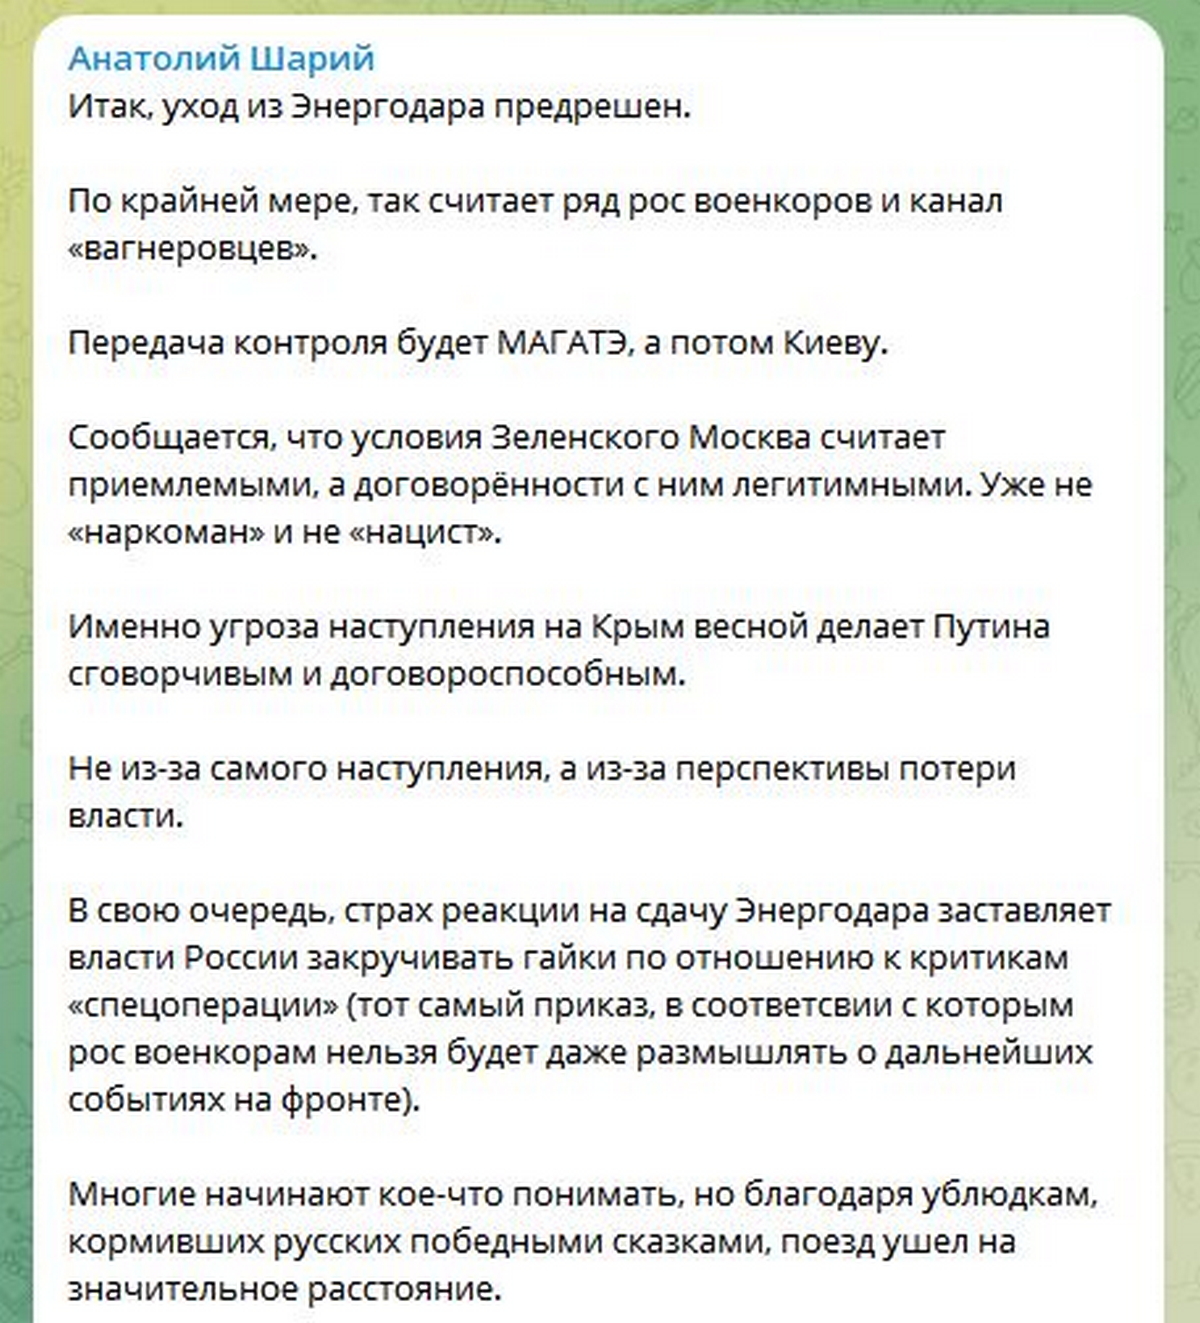 Доля Енергодара вирішена – кажуть російські блогери, а ЗСУ обіцяють: «Забезпечимо вихід в пакетах»